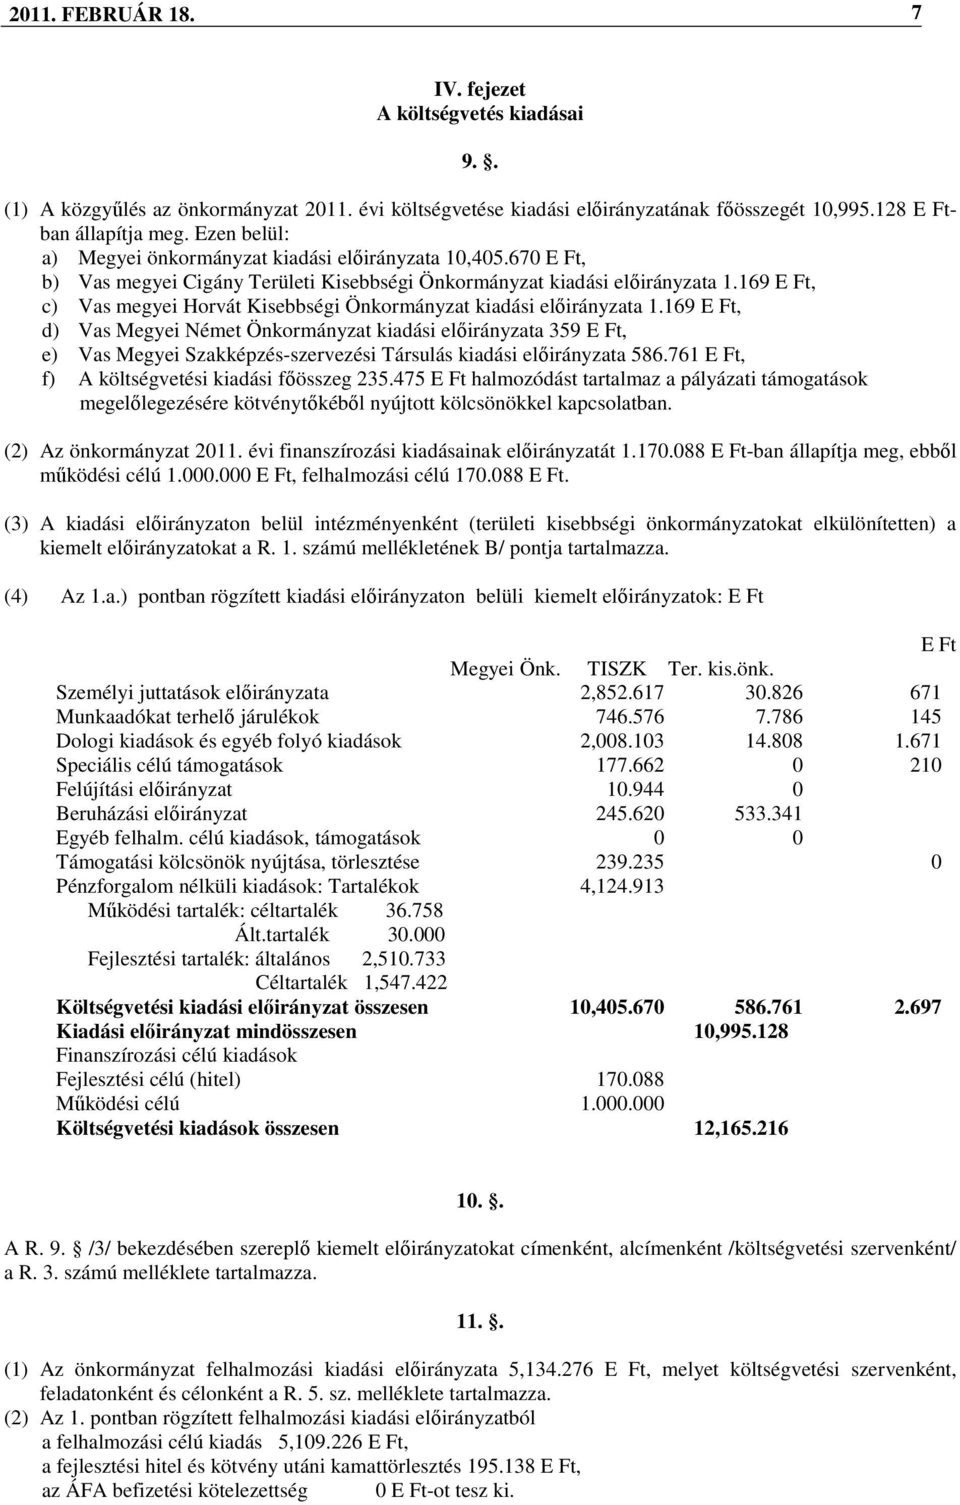 169 E Ft, c) Vas megyei Horvát Kisebbségi Önkormányzat kiadási elıirányzata 1.